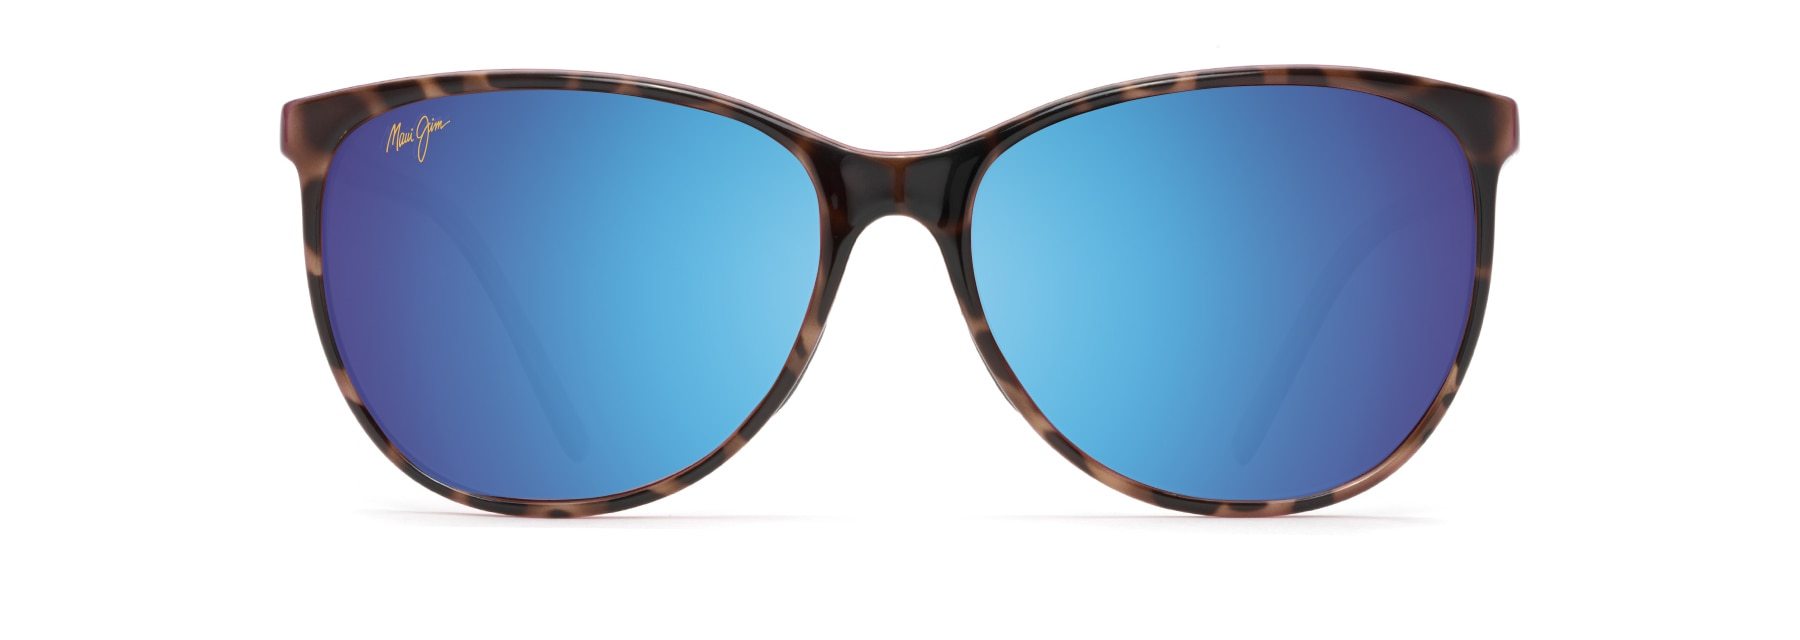 MyMaui Ocean MM723-021 Sunglasses